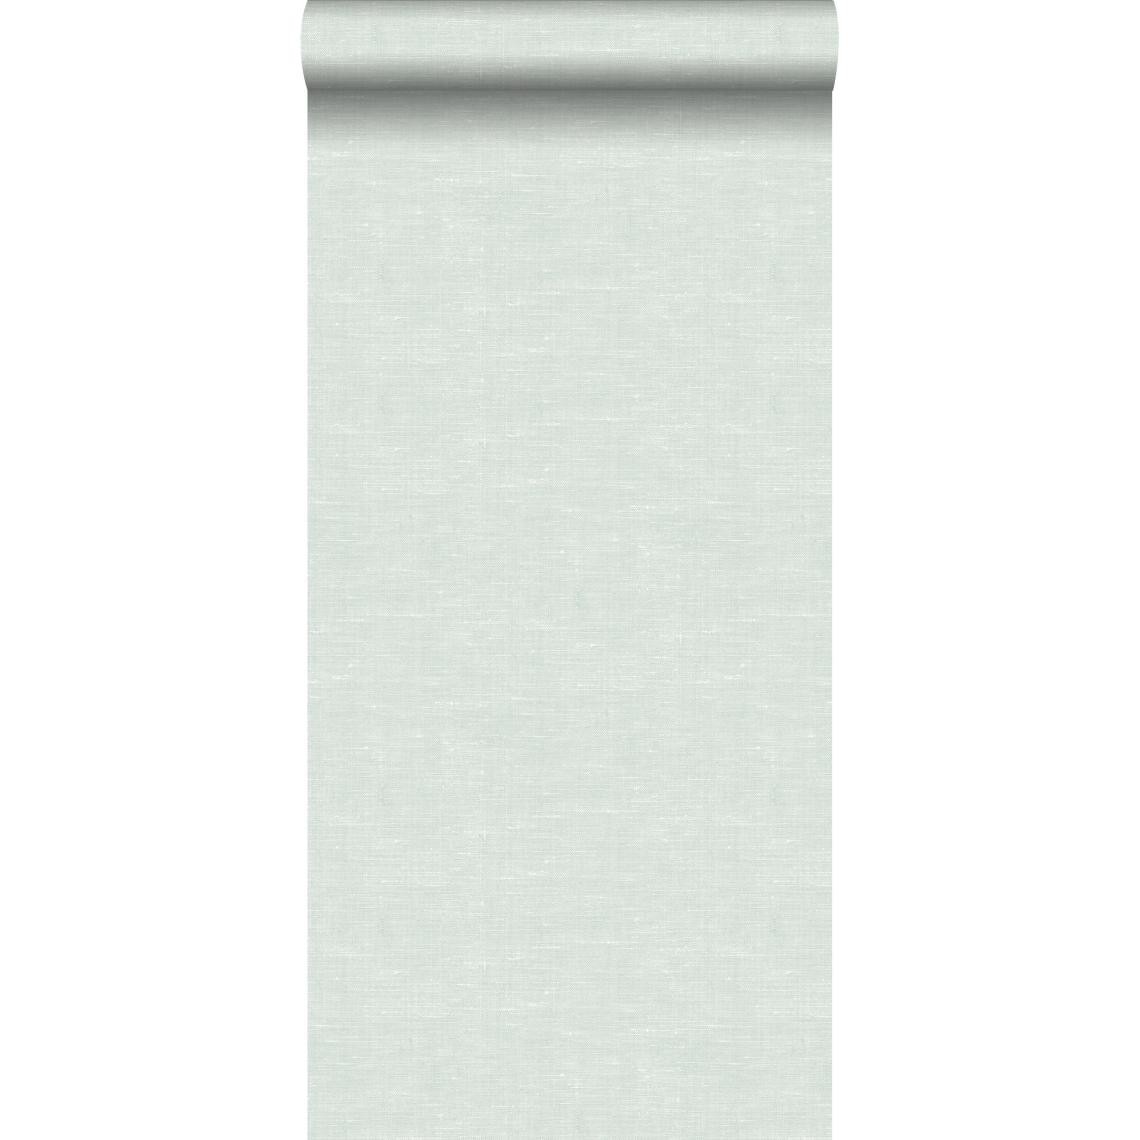 ESTAhome - ESTAhome papier peint lin vert menthe pastel clair grisé - 148694 - 53 cm x 10,05 m - Papier peint